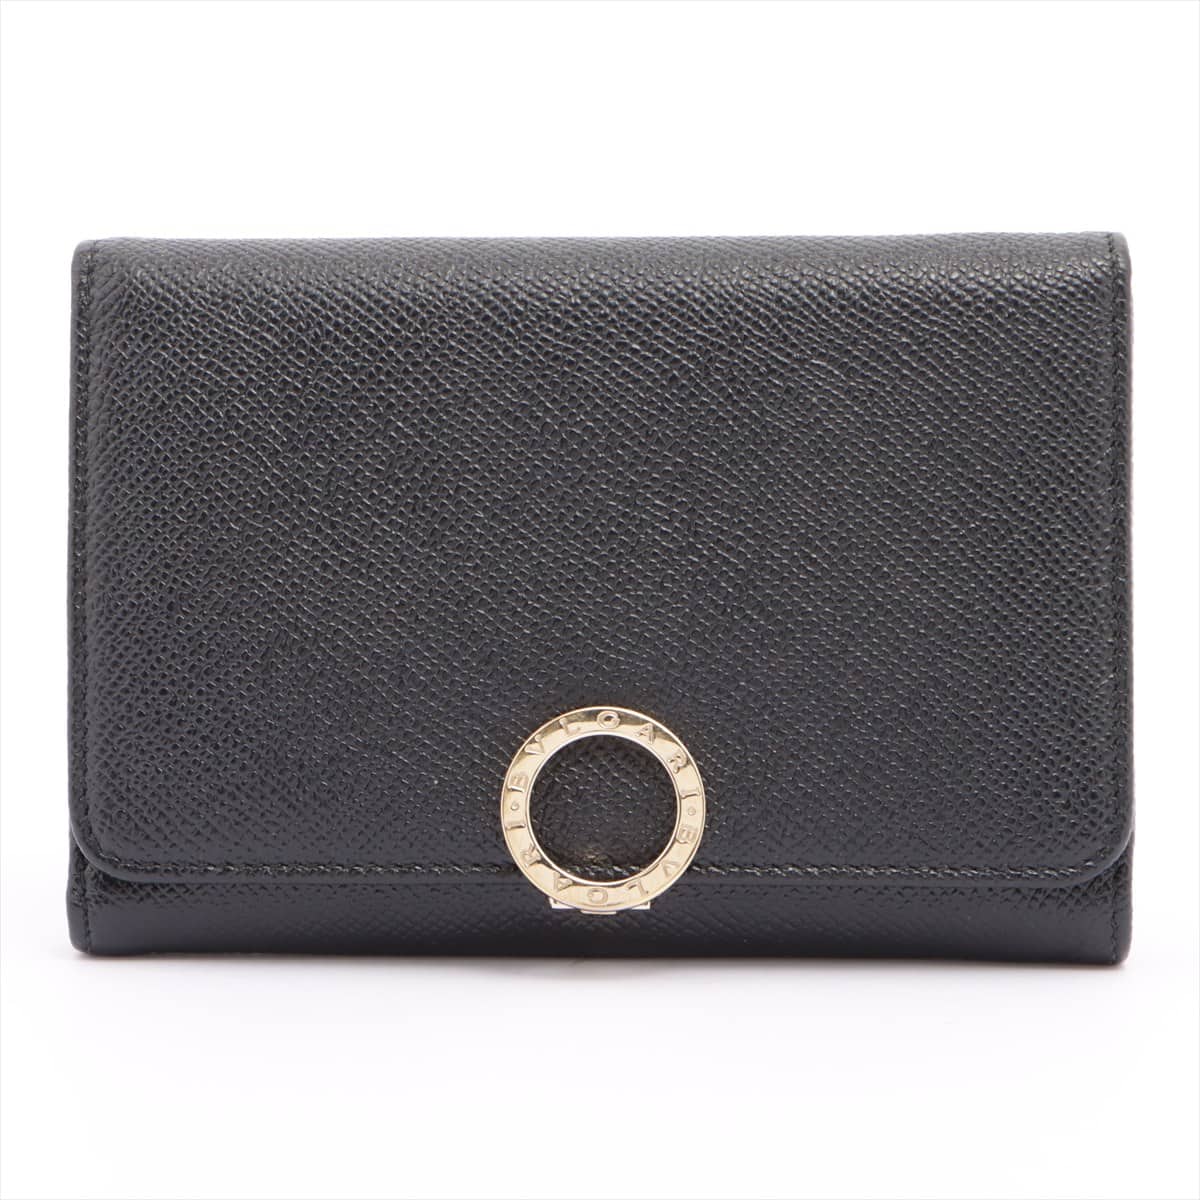 Bvlgari Bvlgari Bvlgari Leather Compact Wallet Black